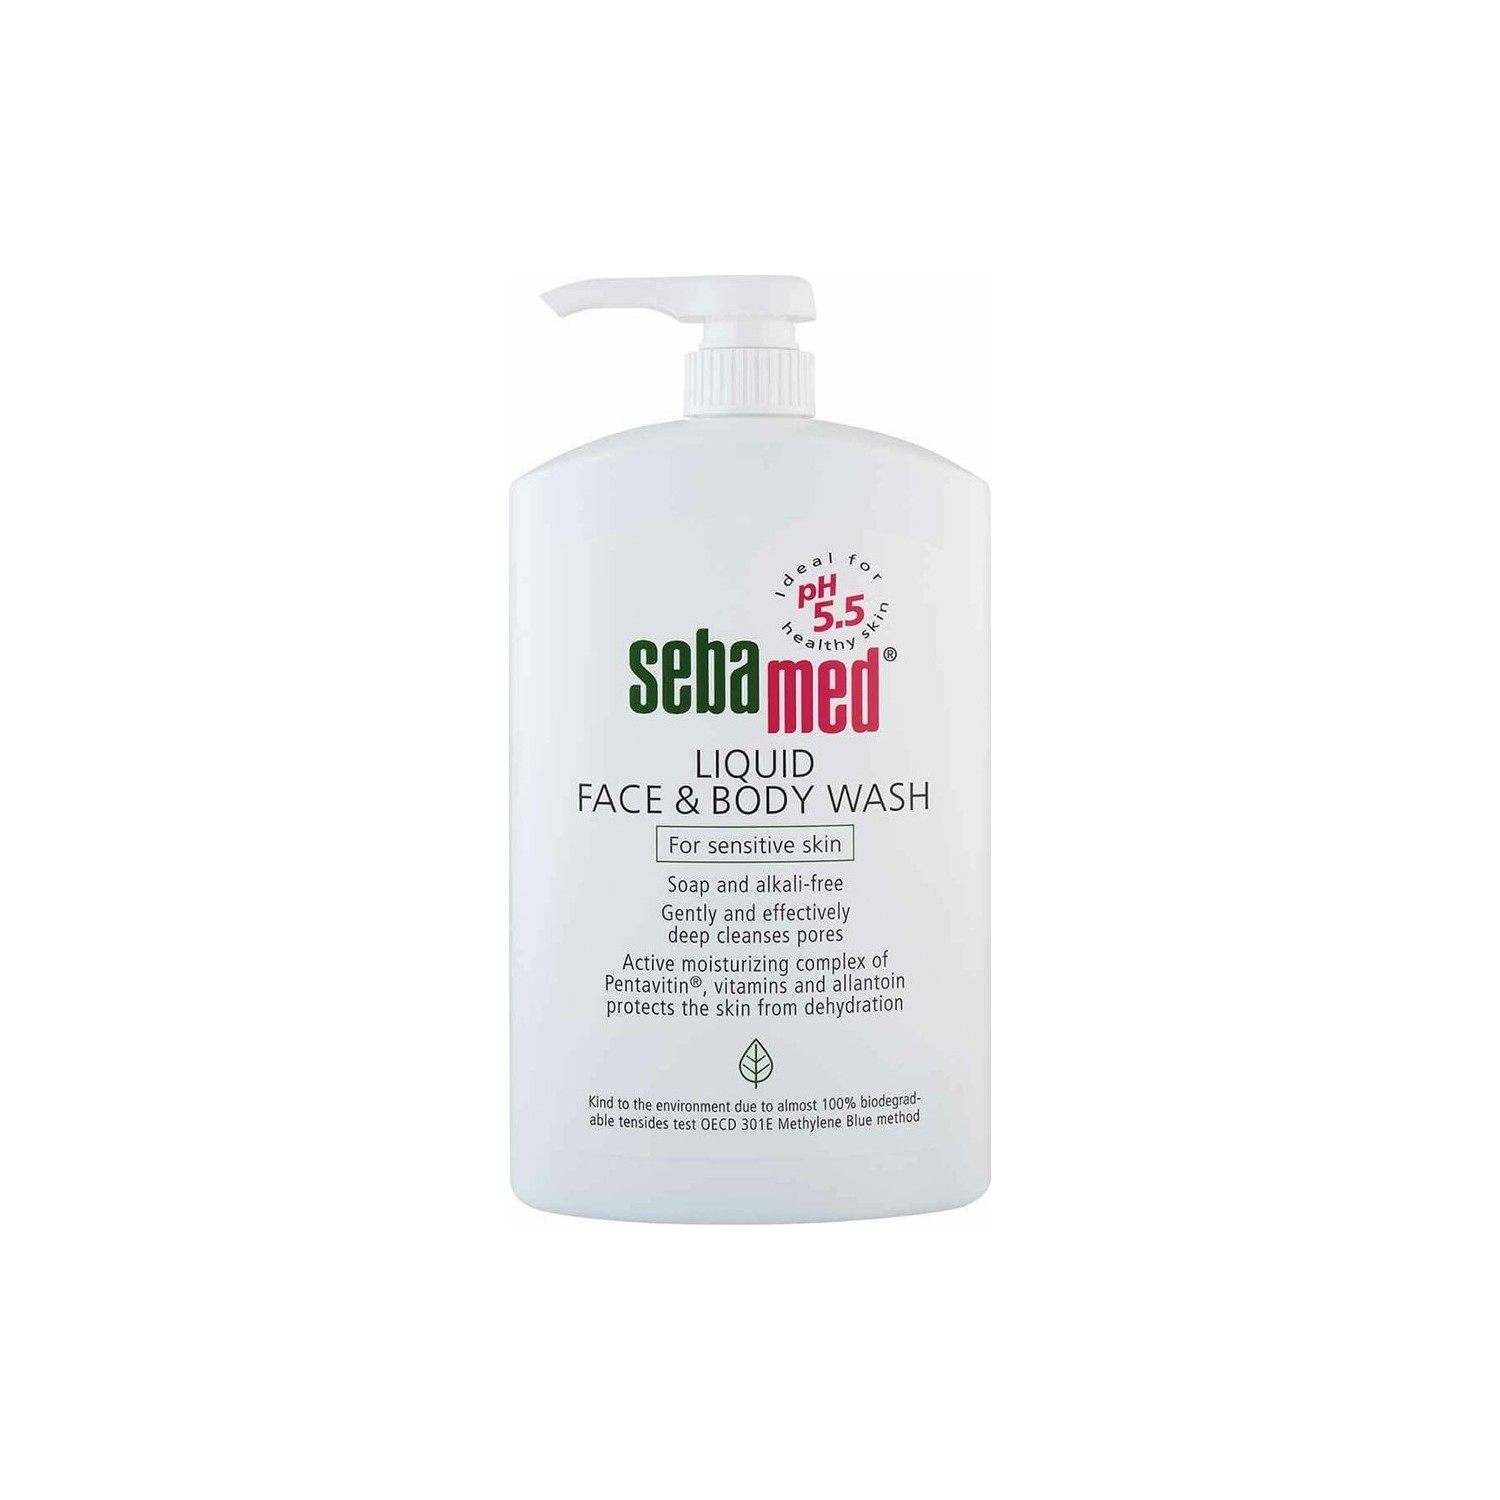 Очищающее средство Sebamed Liquid для лица и тела, 1000 мл alba botanica acne dote средство от акне глубокое очищение пор не содержит масла 177 мл 6 жидких унций